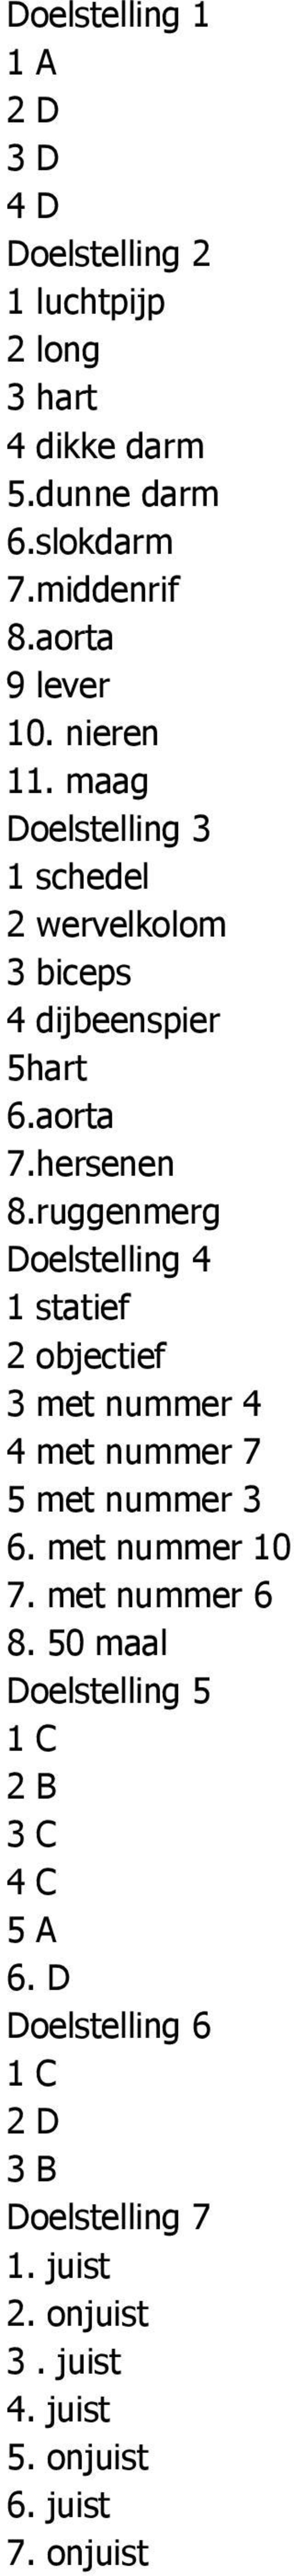 ruggenmerg Doelstelling 4 1 statief 2 objectief 3 met nummer 4 4 met nummer 7 5 met nummer 3 6. met nummer 10 7. met nummer 6 8.